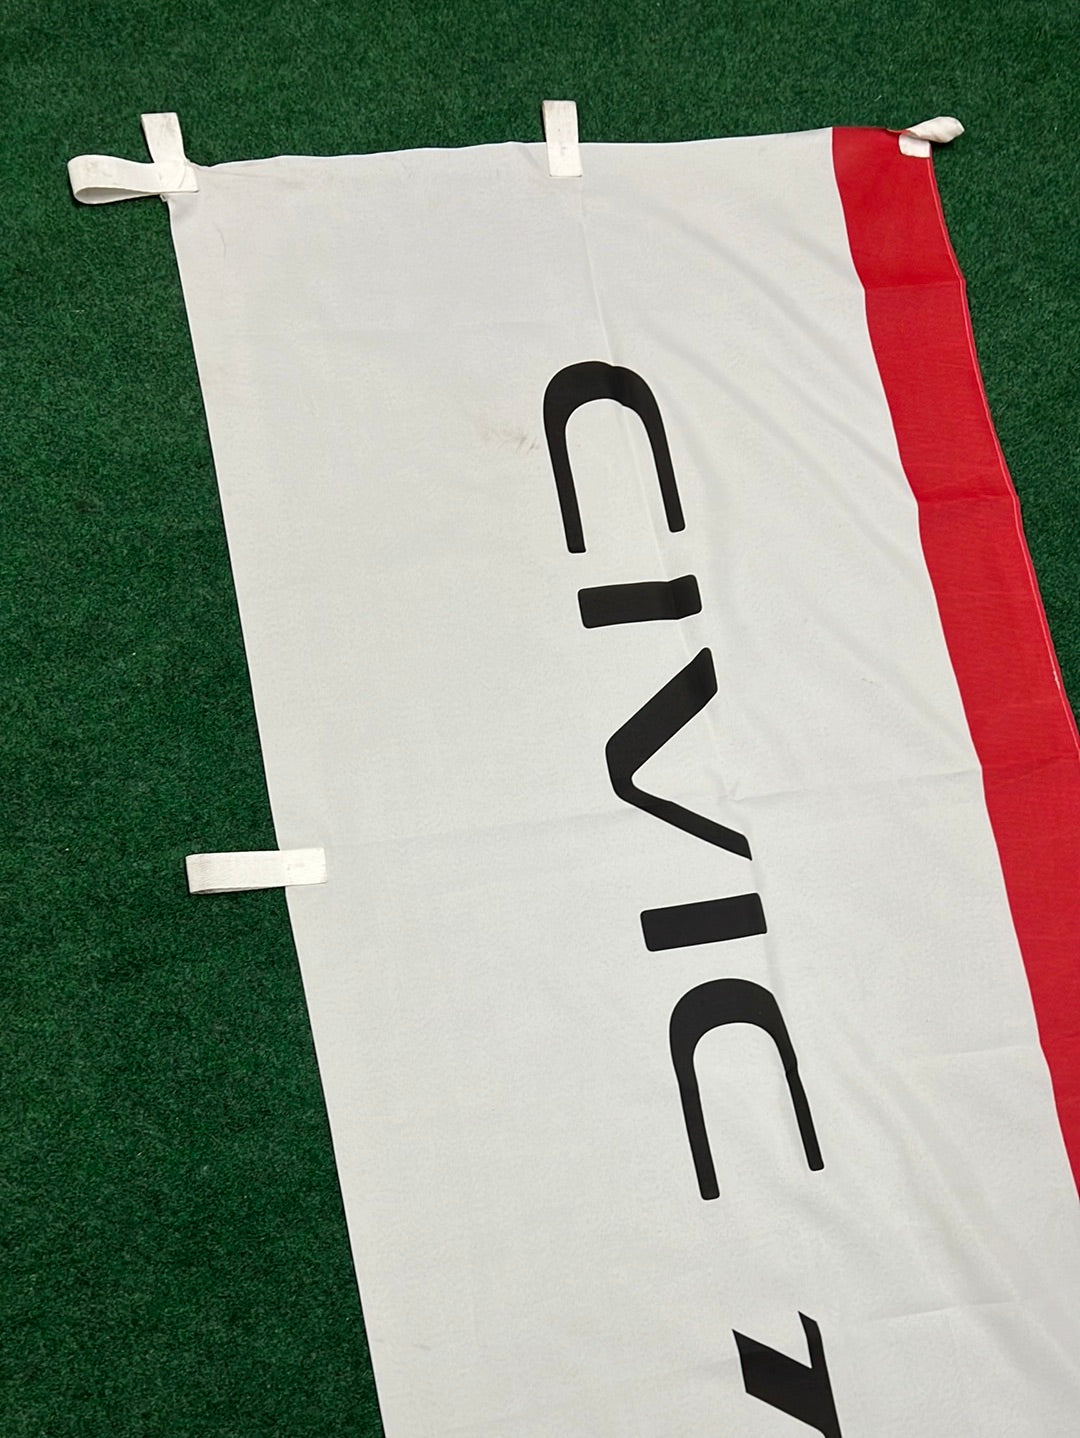 Honda Civic Type R FL5 Japanese Dealership Nobori Banner